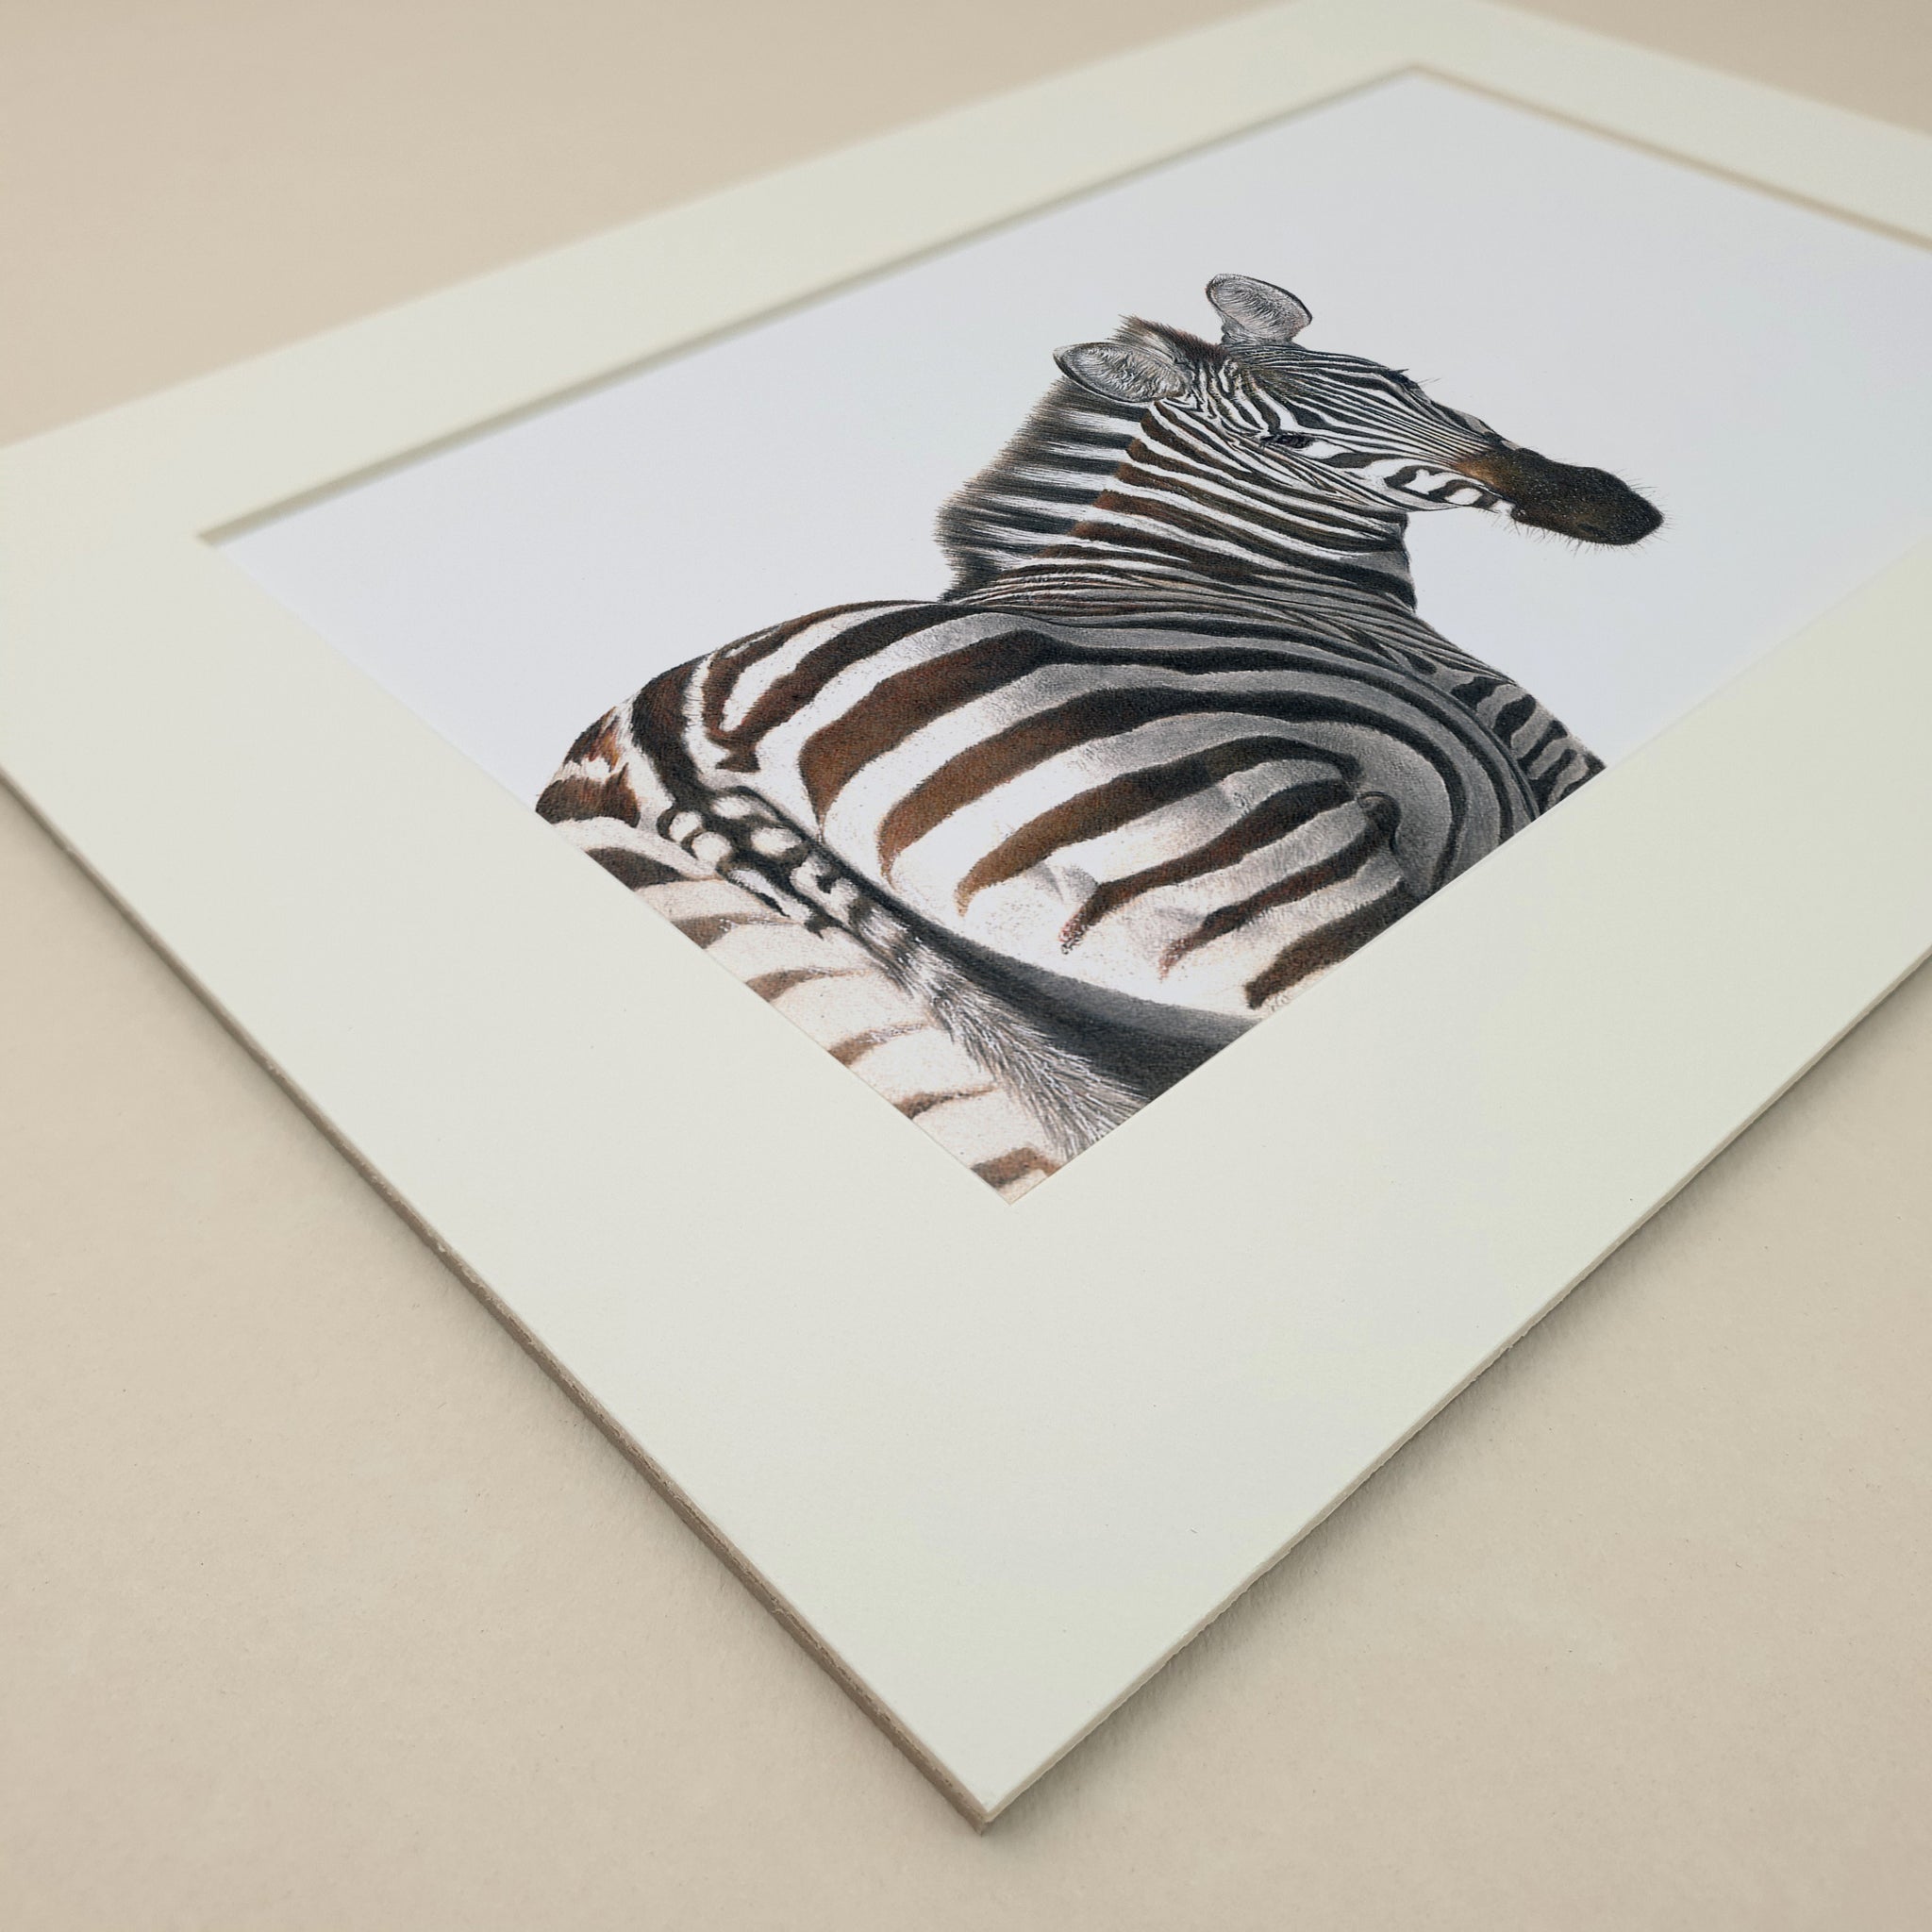 Zebra portrait colour pencil artwork drawing